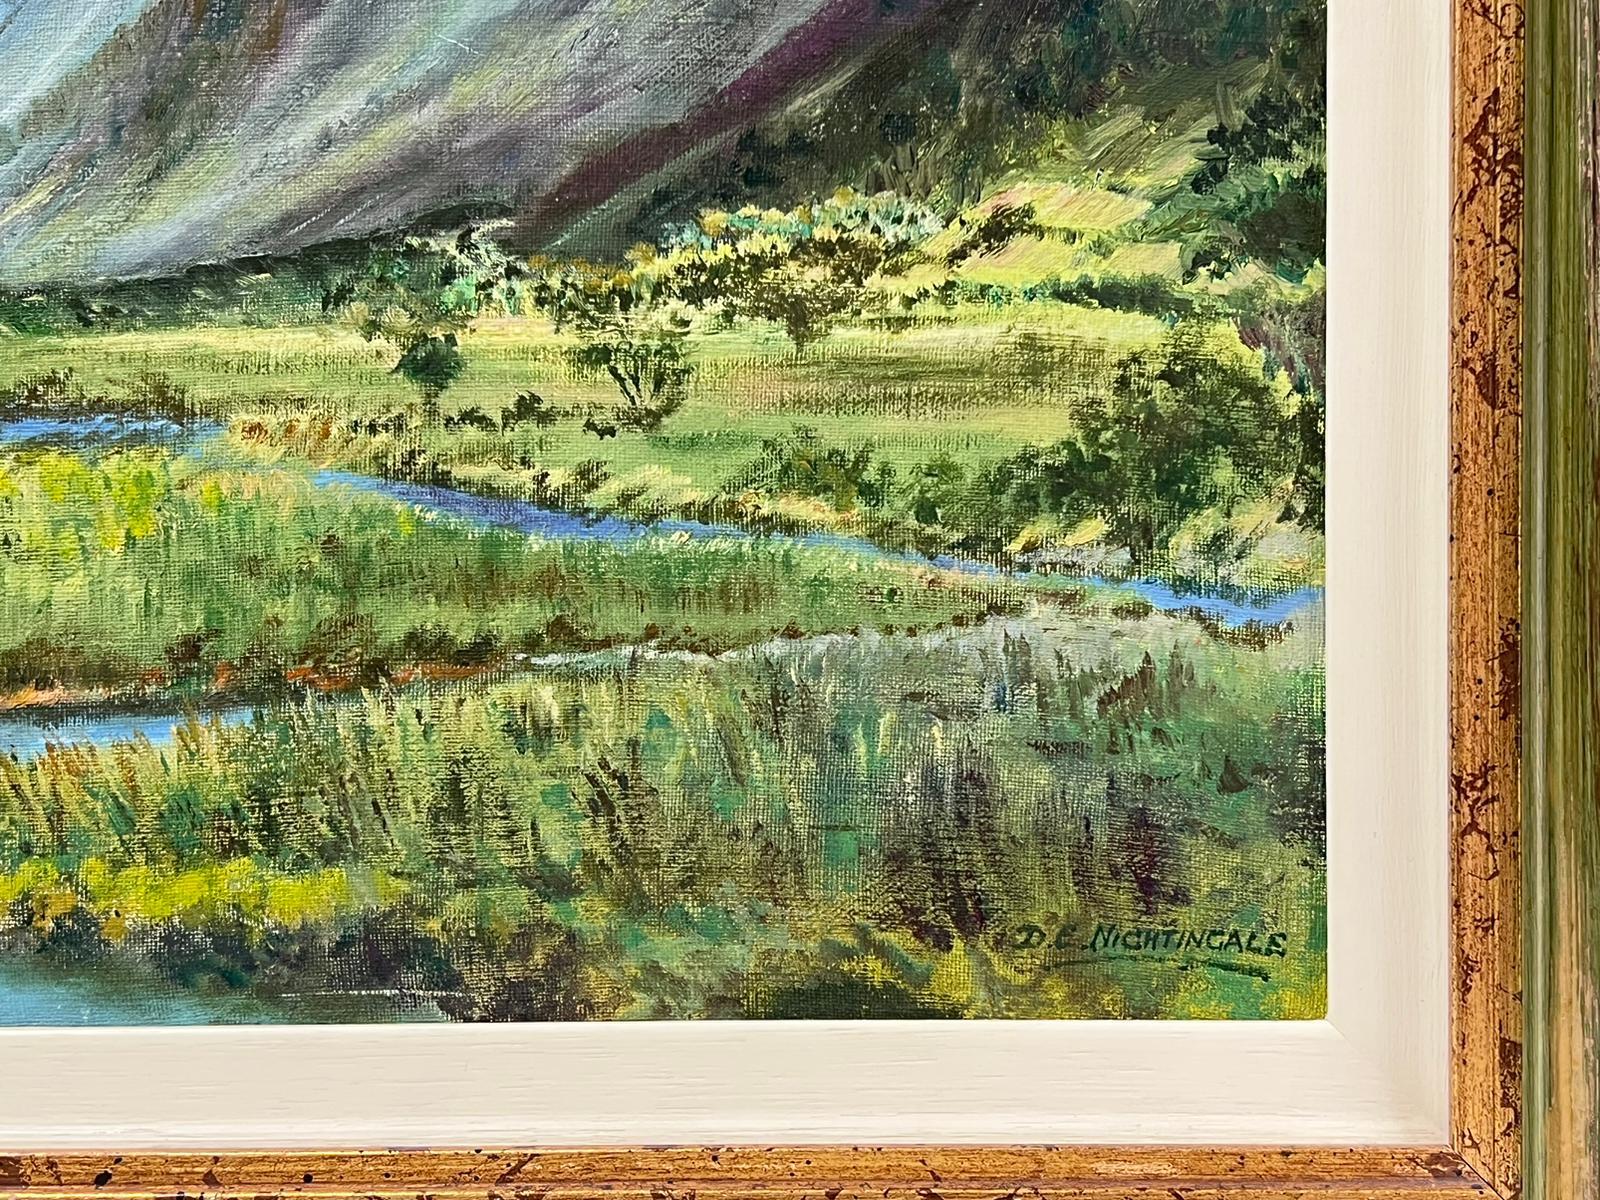 Peinture à l'huile - Paysage de rivière Afon au nord du Pays de Galles, signée Abergynolwyn - Moderne Painting par D. E. Nightingale